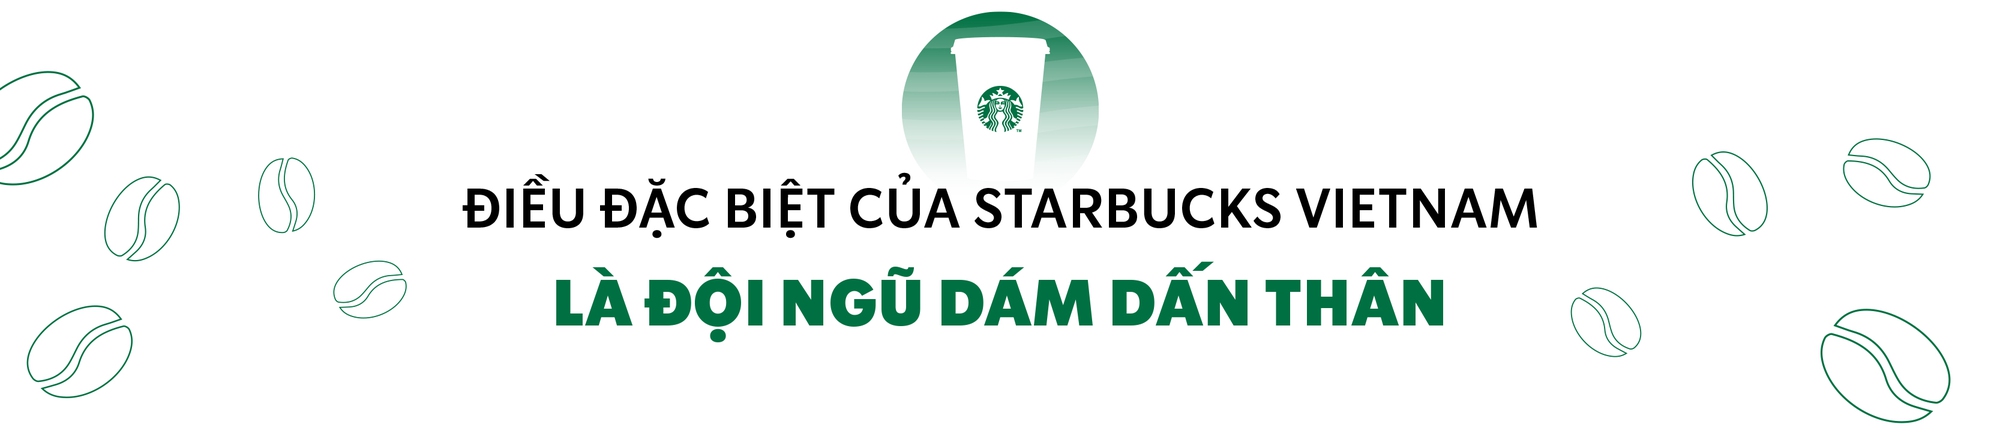 Starbucks Vietnam từ thương hiệu quốc tế đến dẫn dắt xu hướng cà phê Việt suốt một thập kỷ - Ảnh 4.